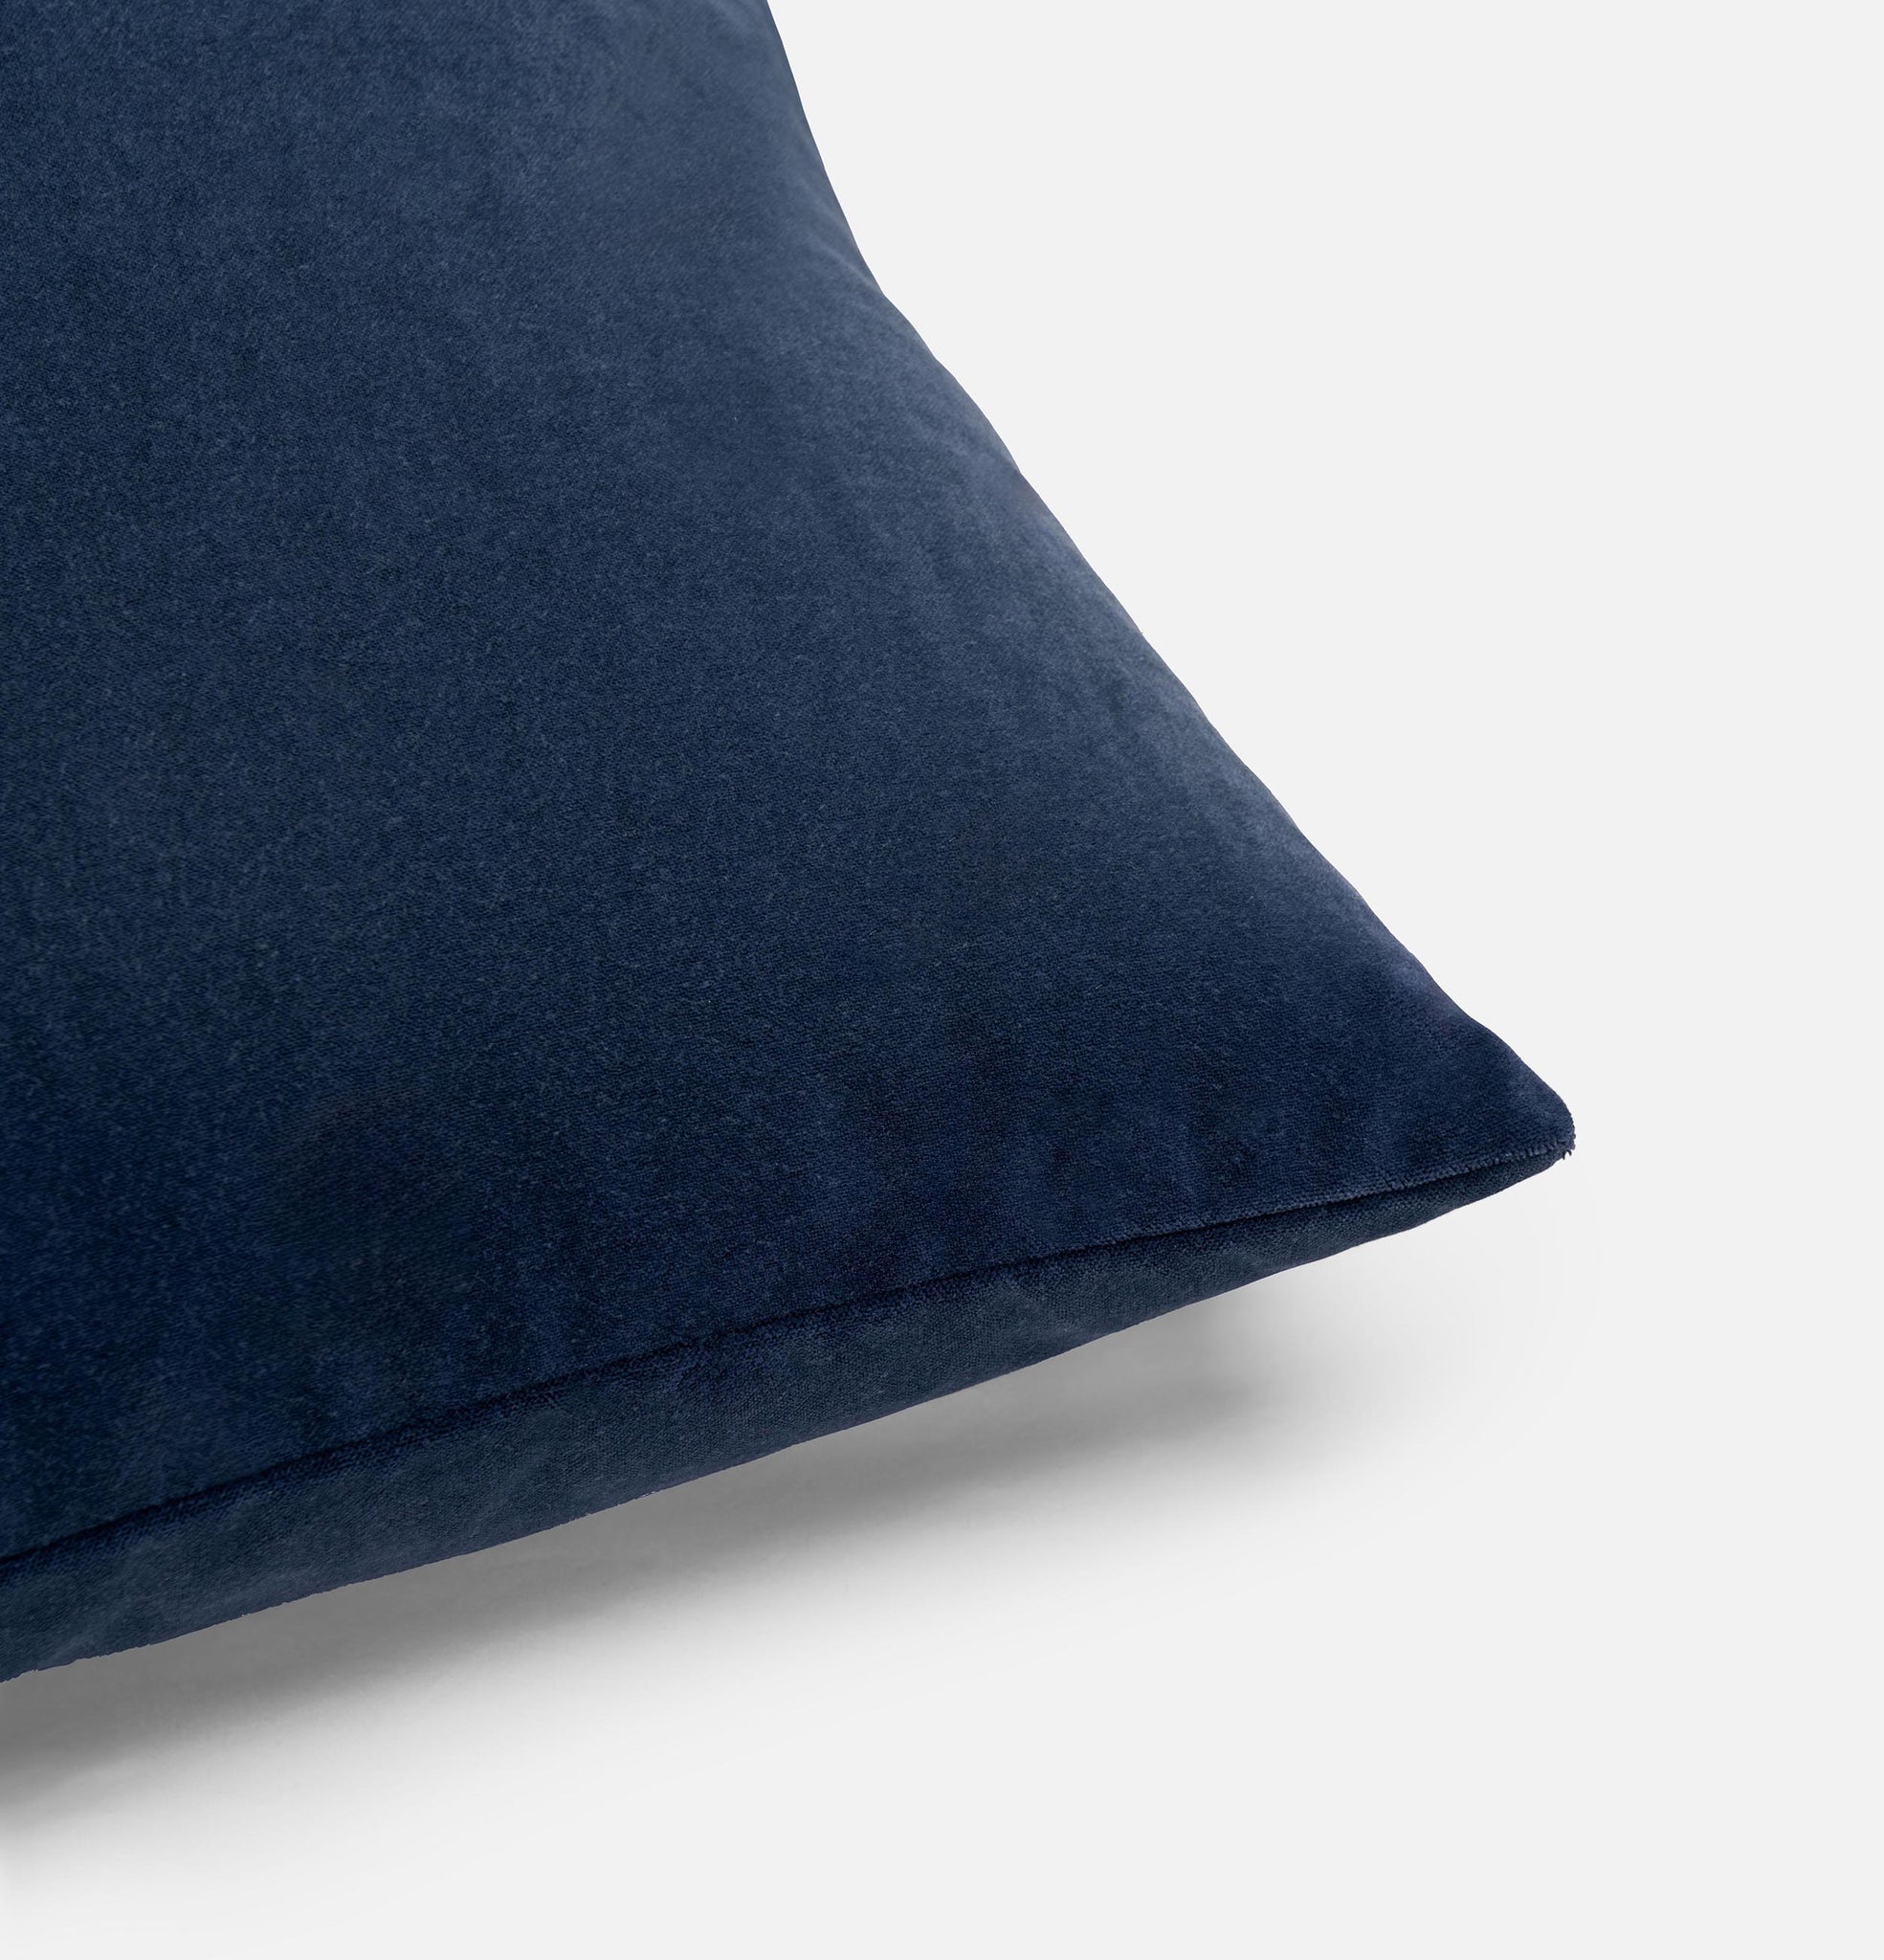 Corner detail of navy velvet cushion